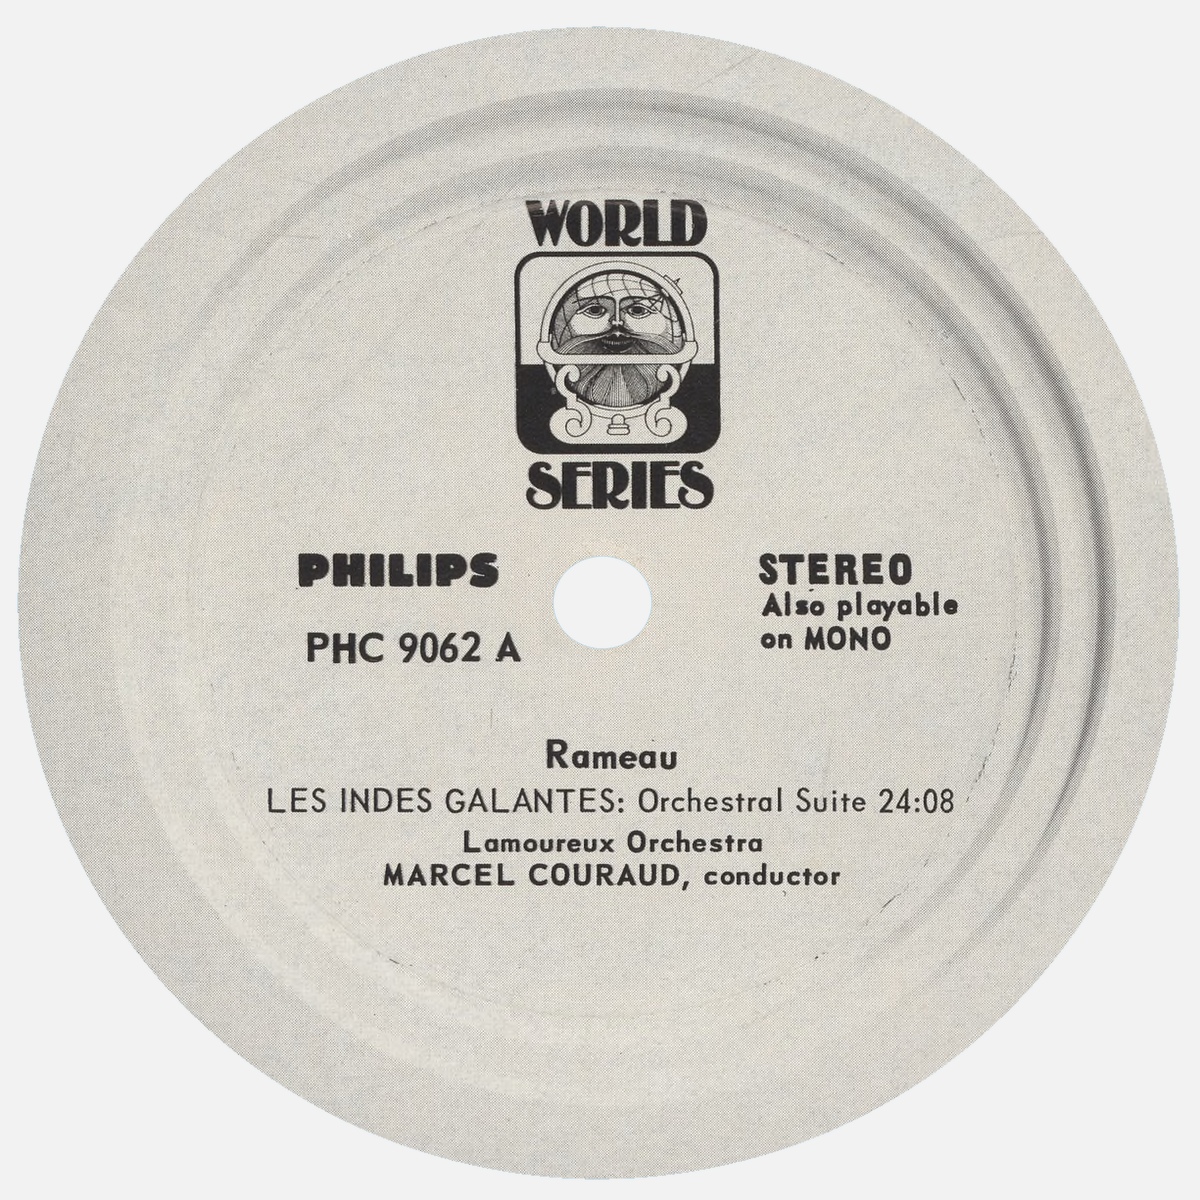 Étiquette recto du disque Philips PHC 9062